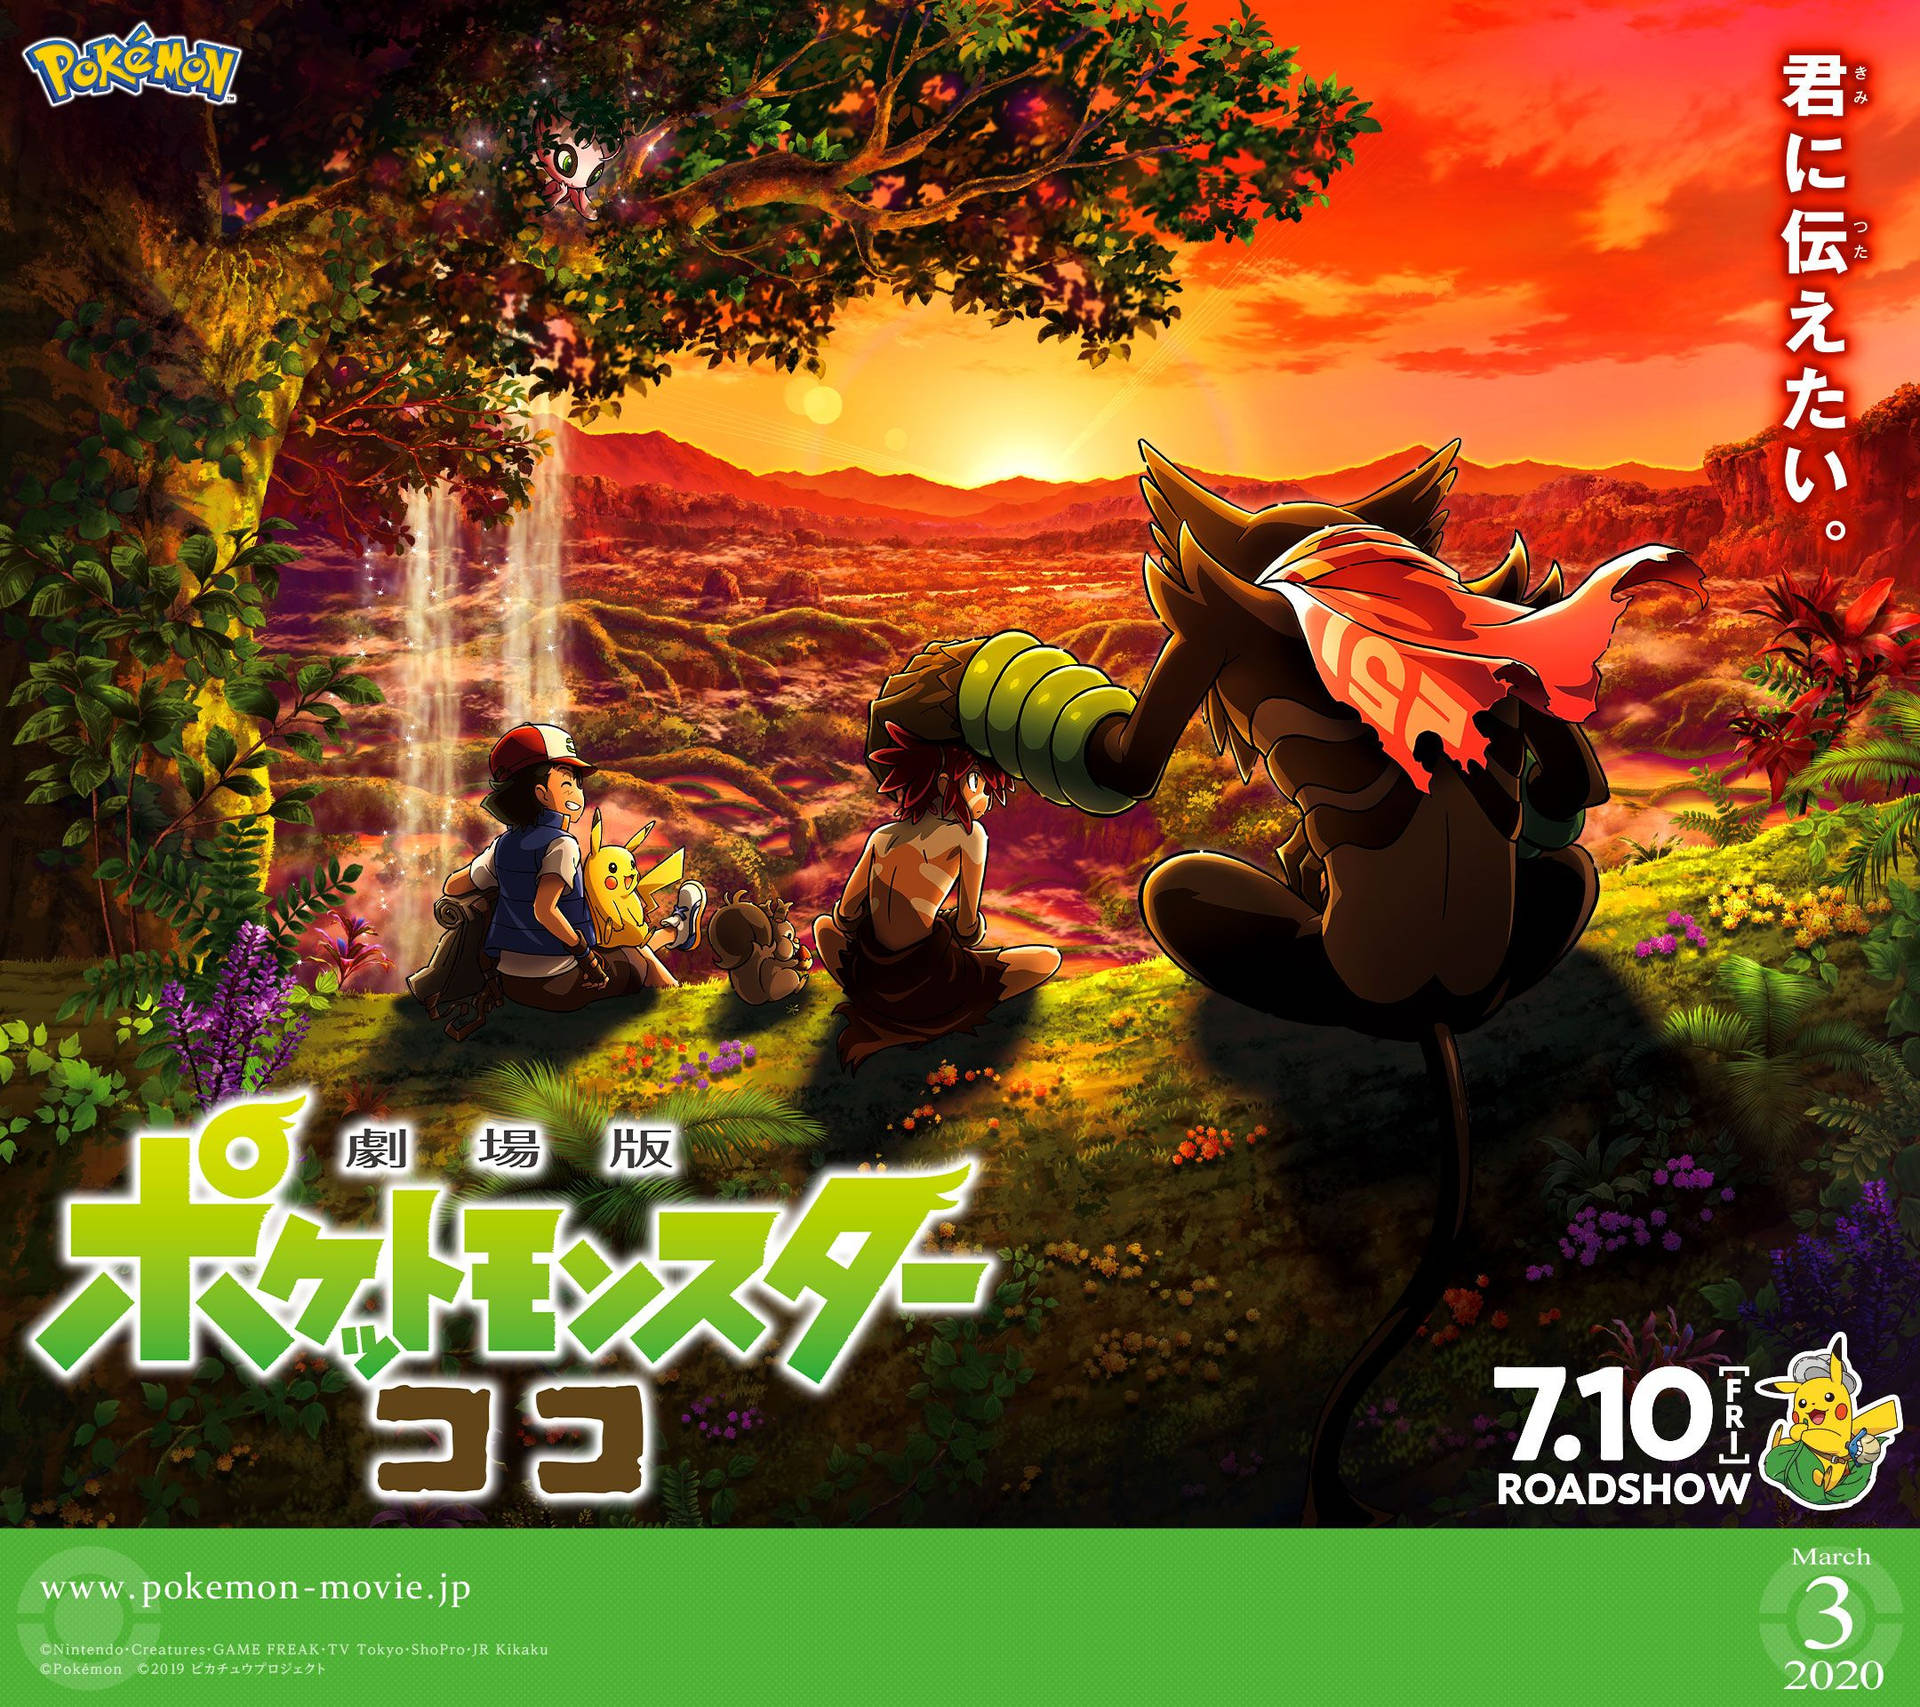 Pokémon the Movie med Zarude skaber en drømmende scene af vandrefleksioner og farverige træer. Wallpaper